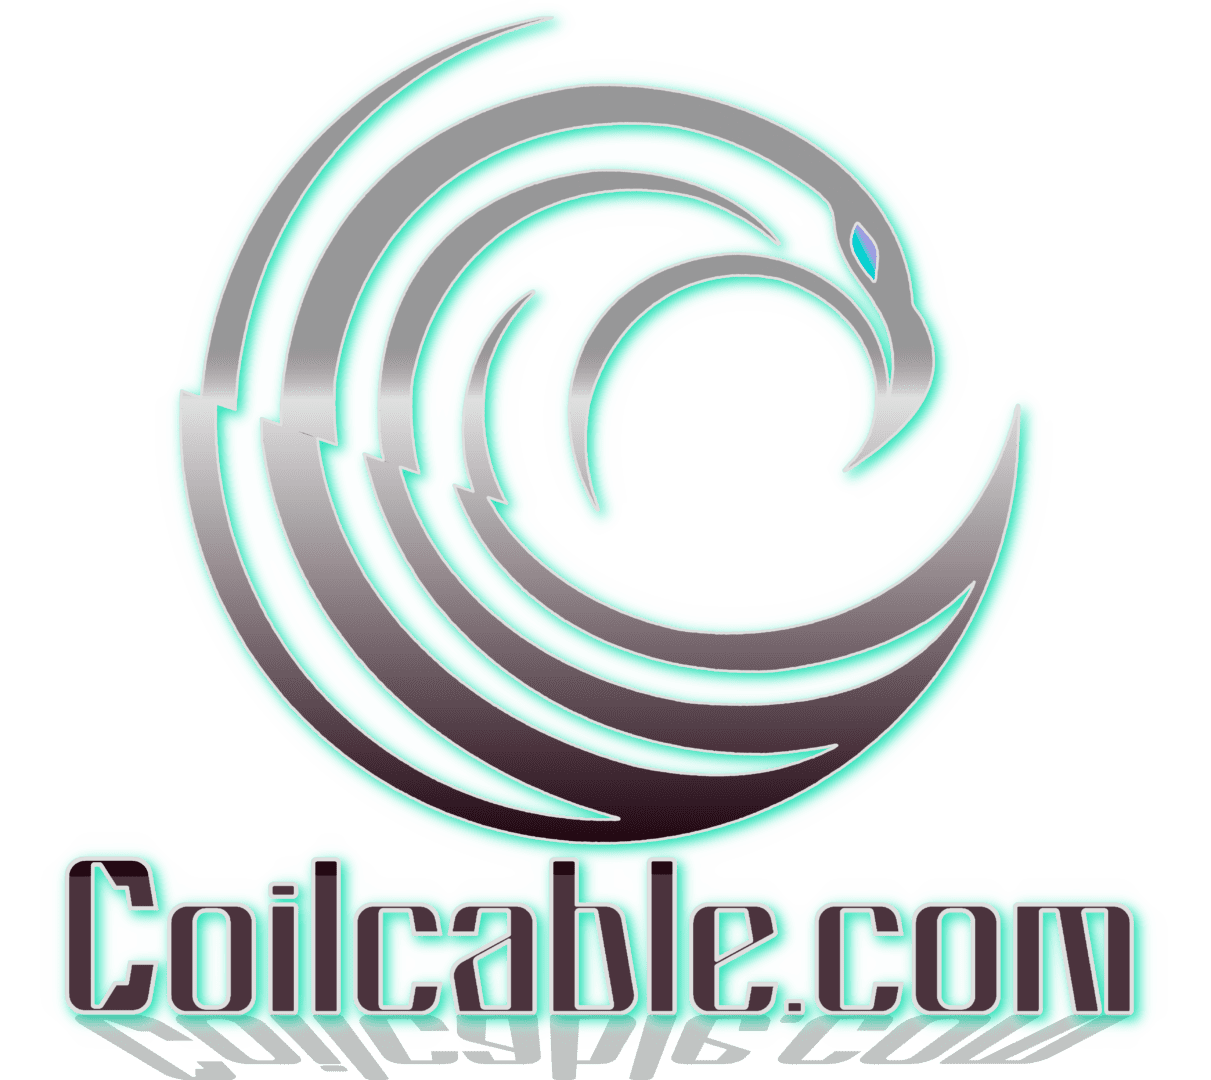 The logo for colicable com.